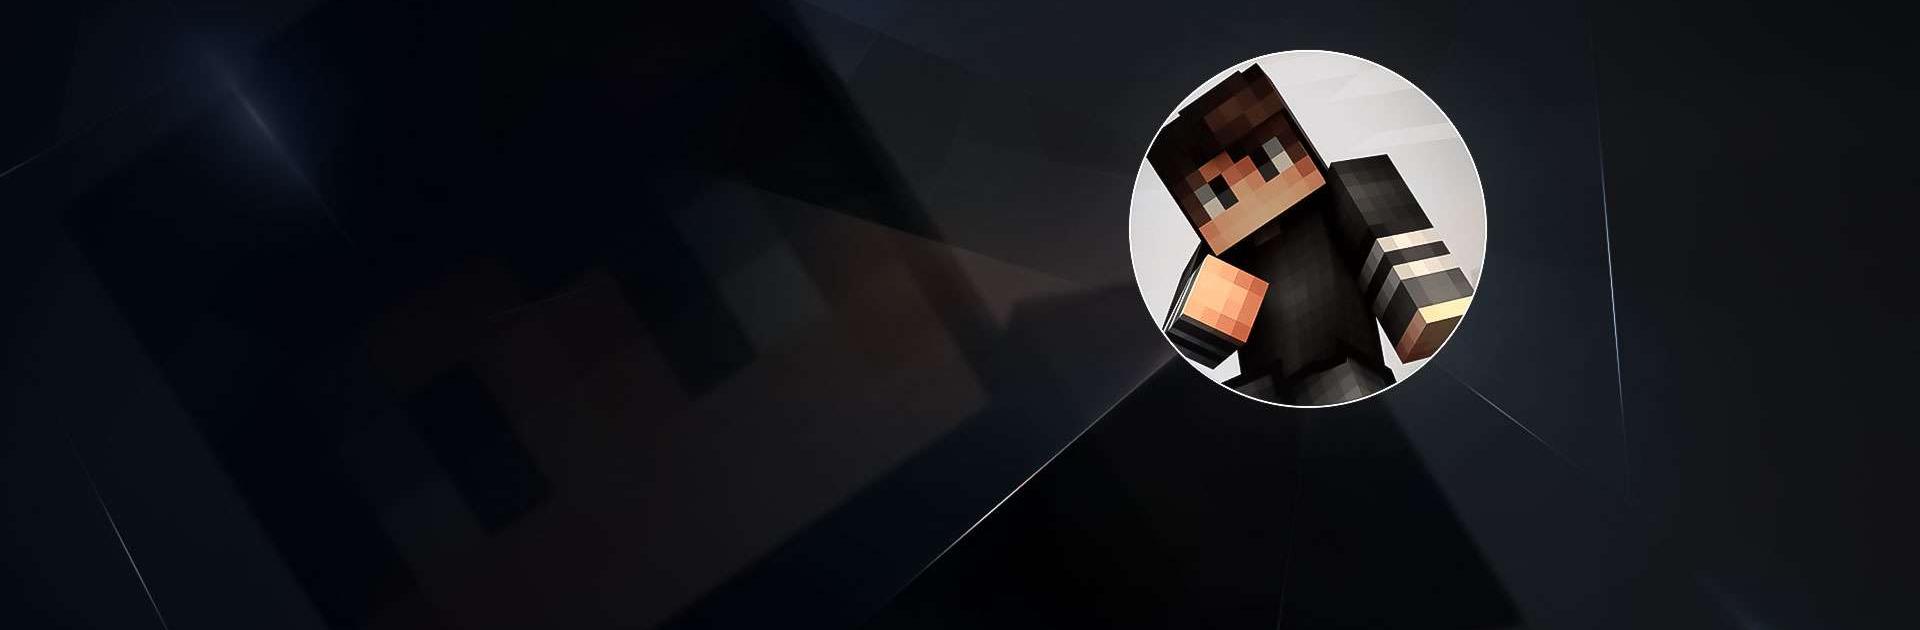 App Insights: Skin Editor for Minecraft 3D